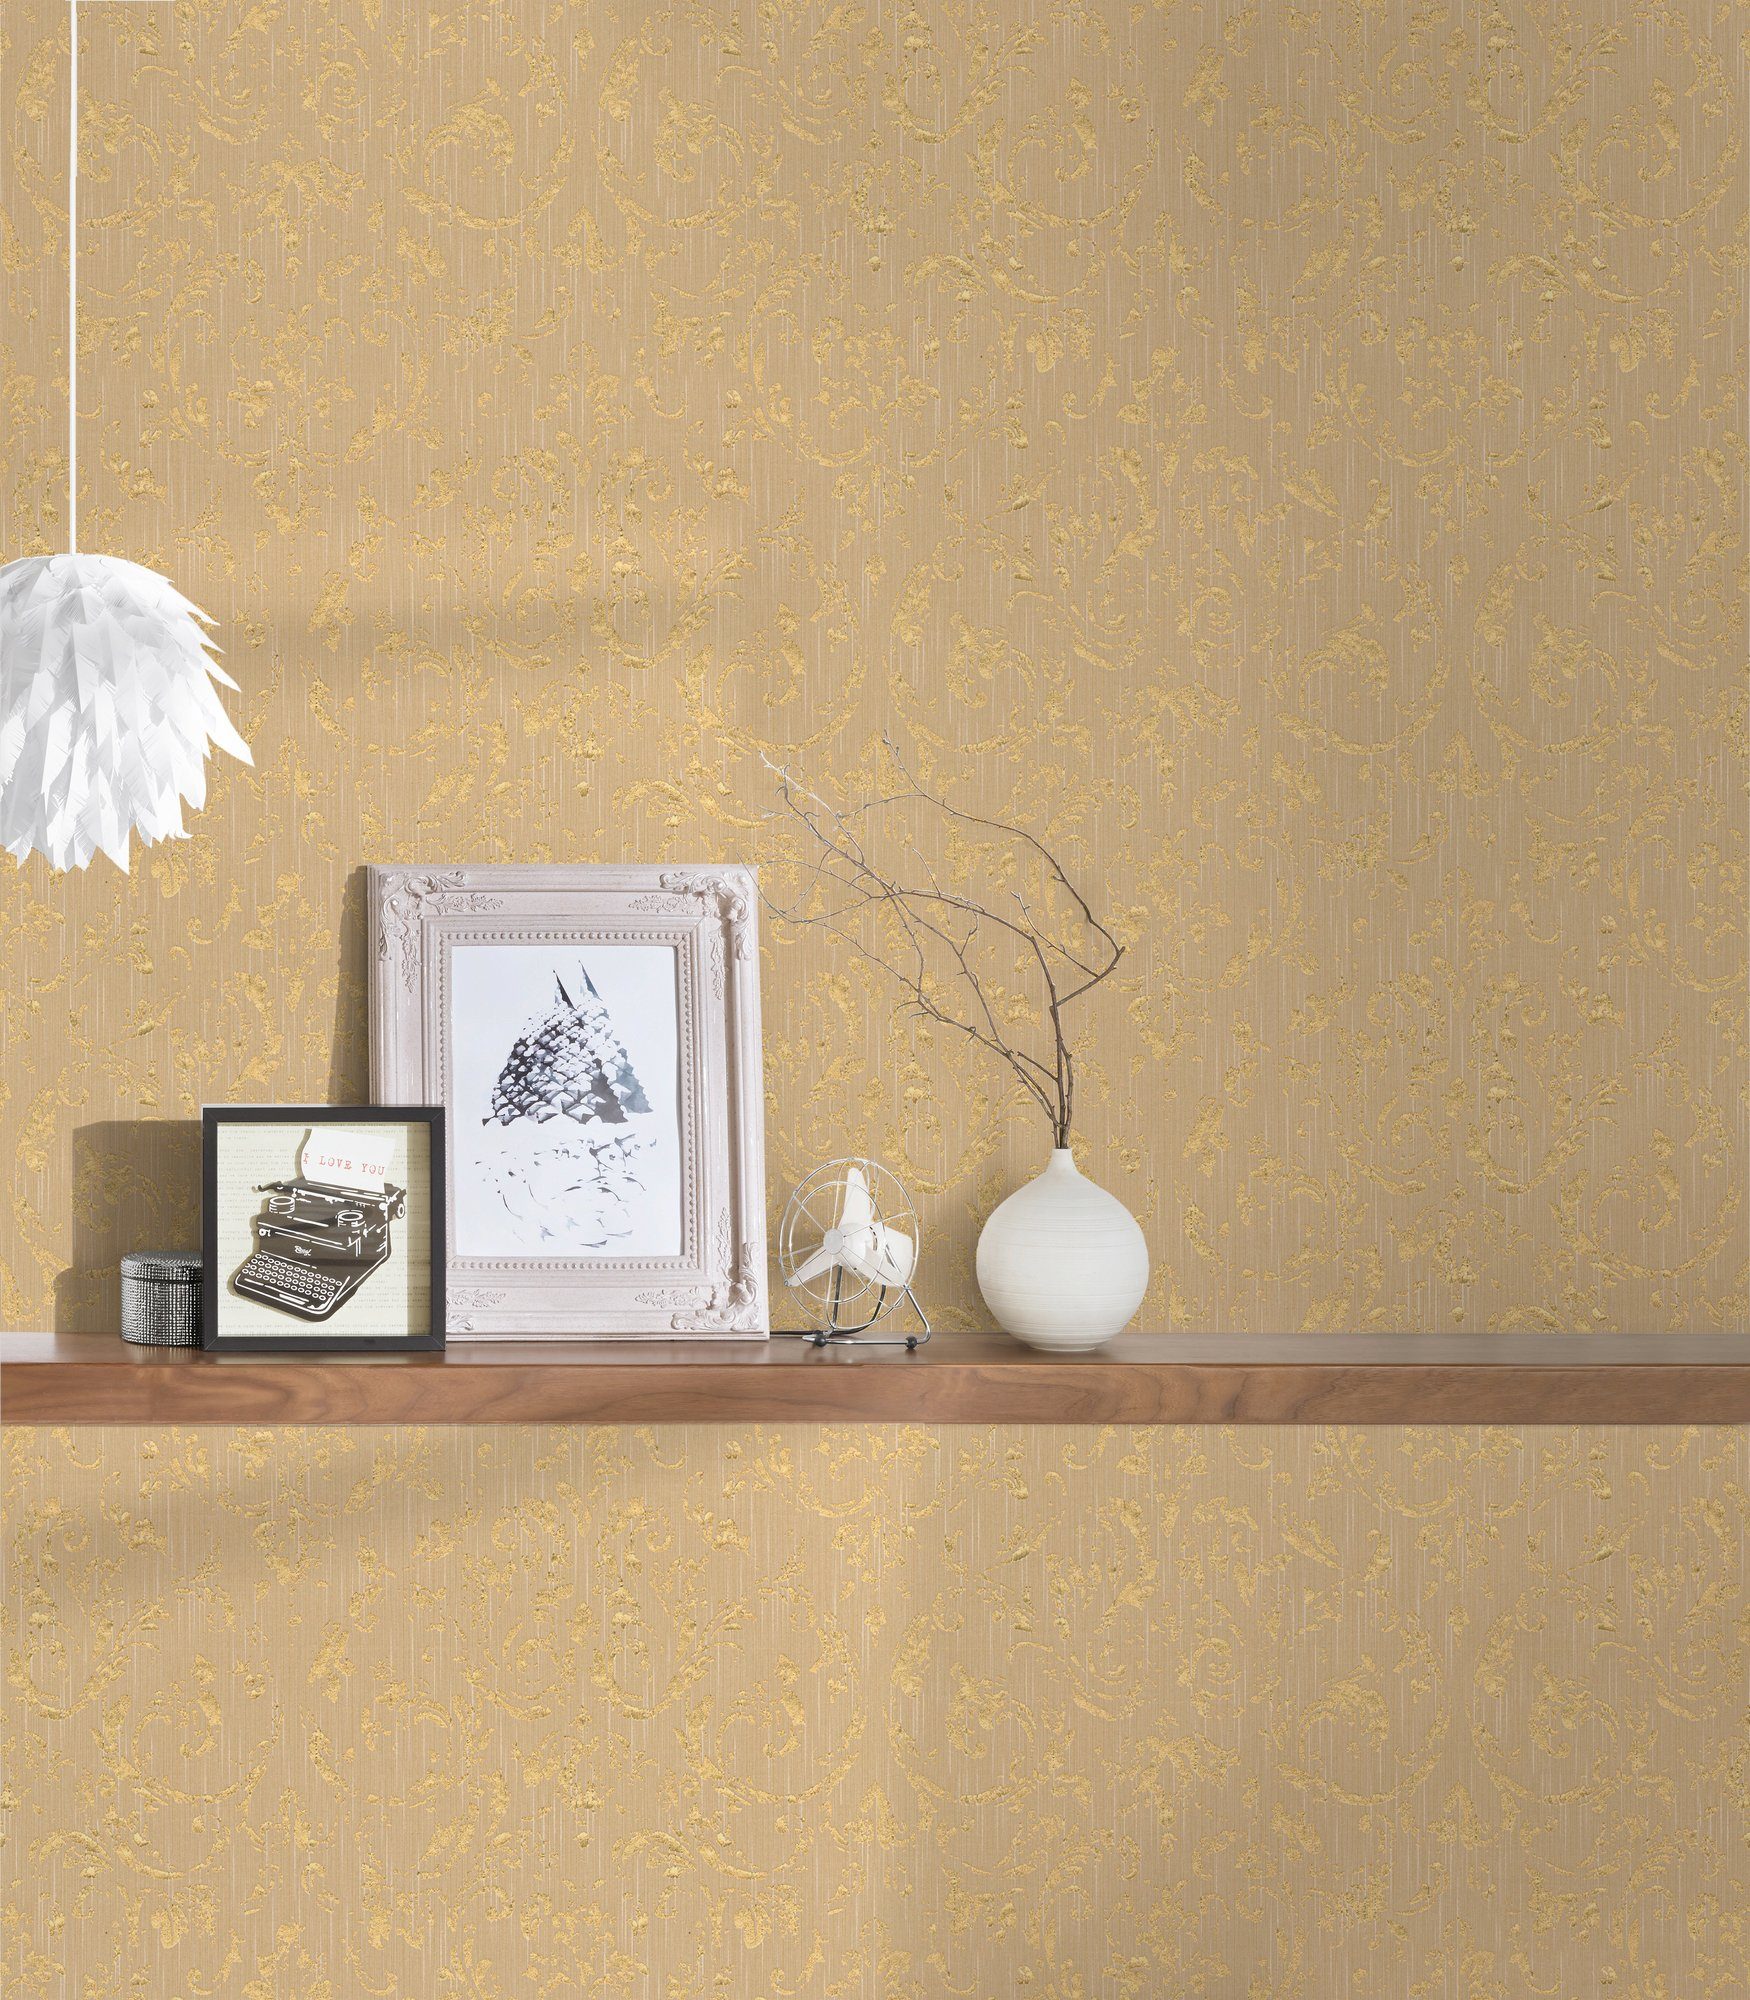 Architects Silk, Textiltapete Barock, gold/beige A.S. Metallic Création samtig, Ornament matt, glänzend, Tapete Paper Barock